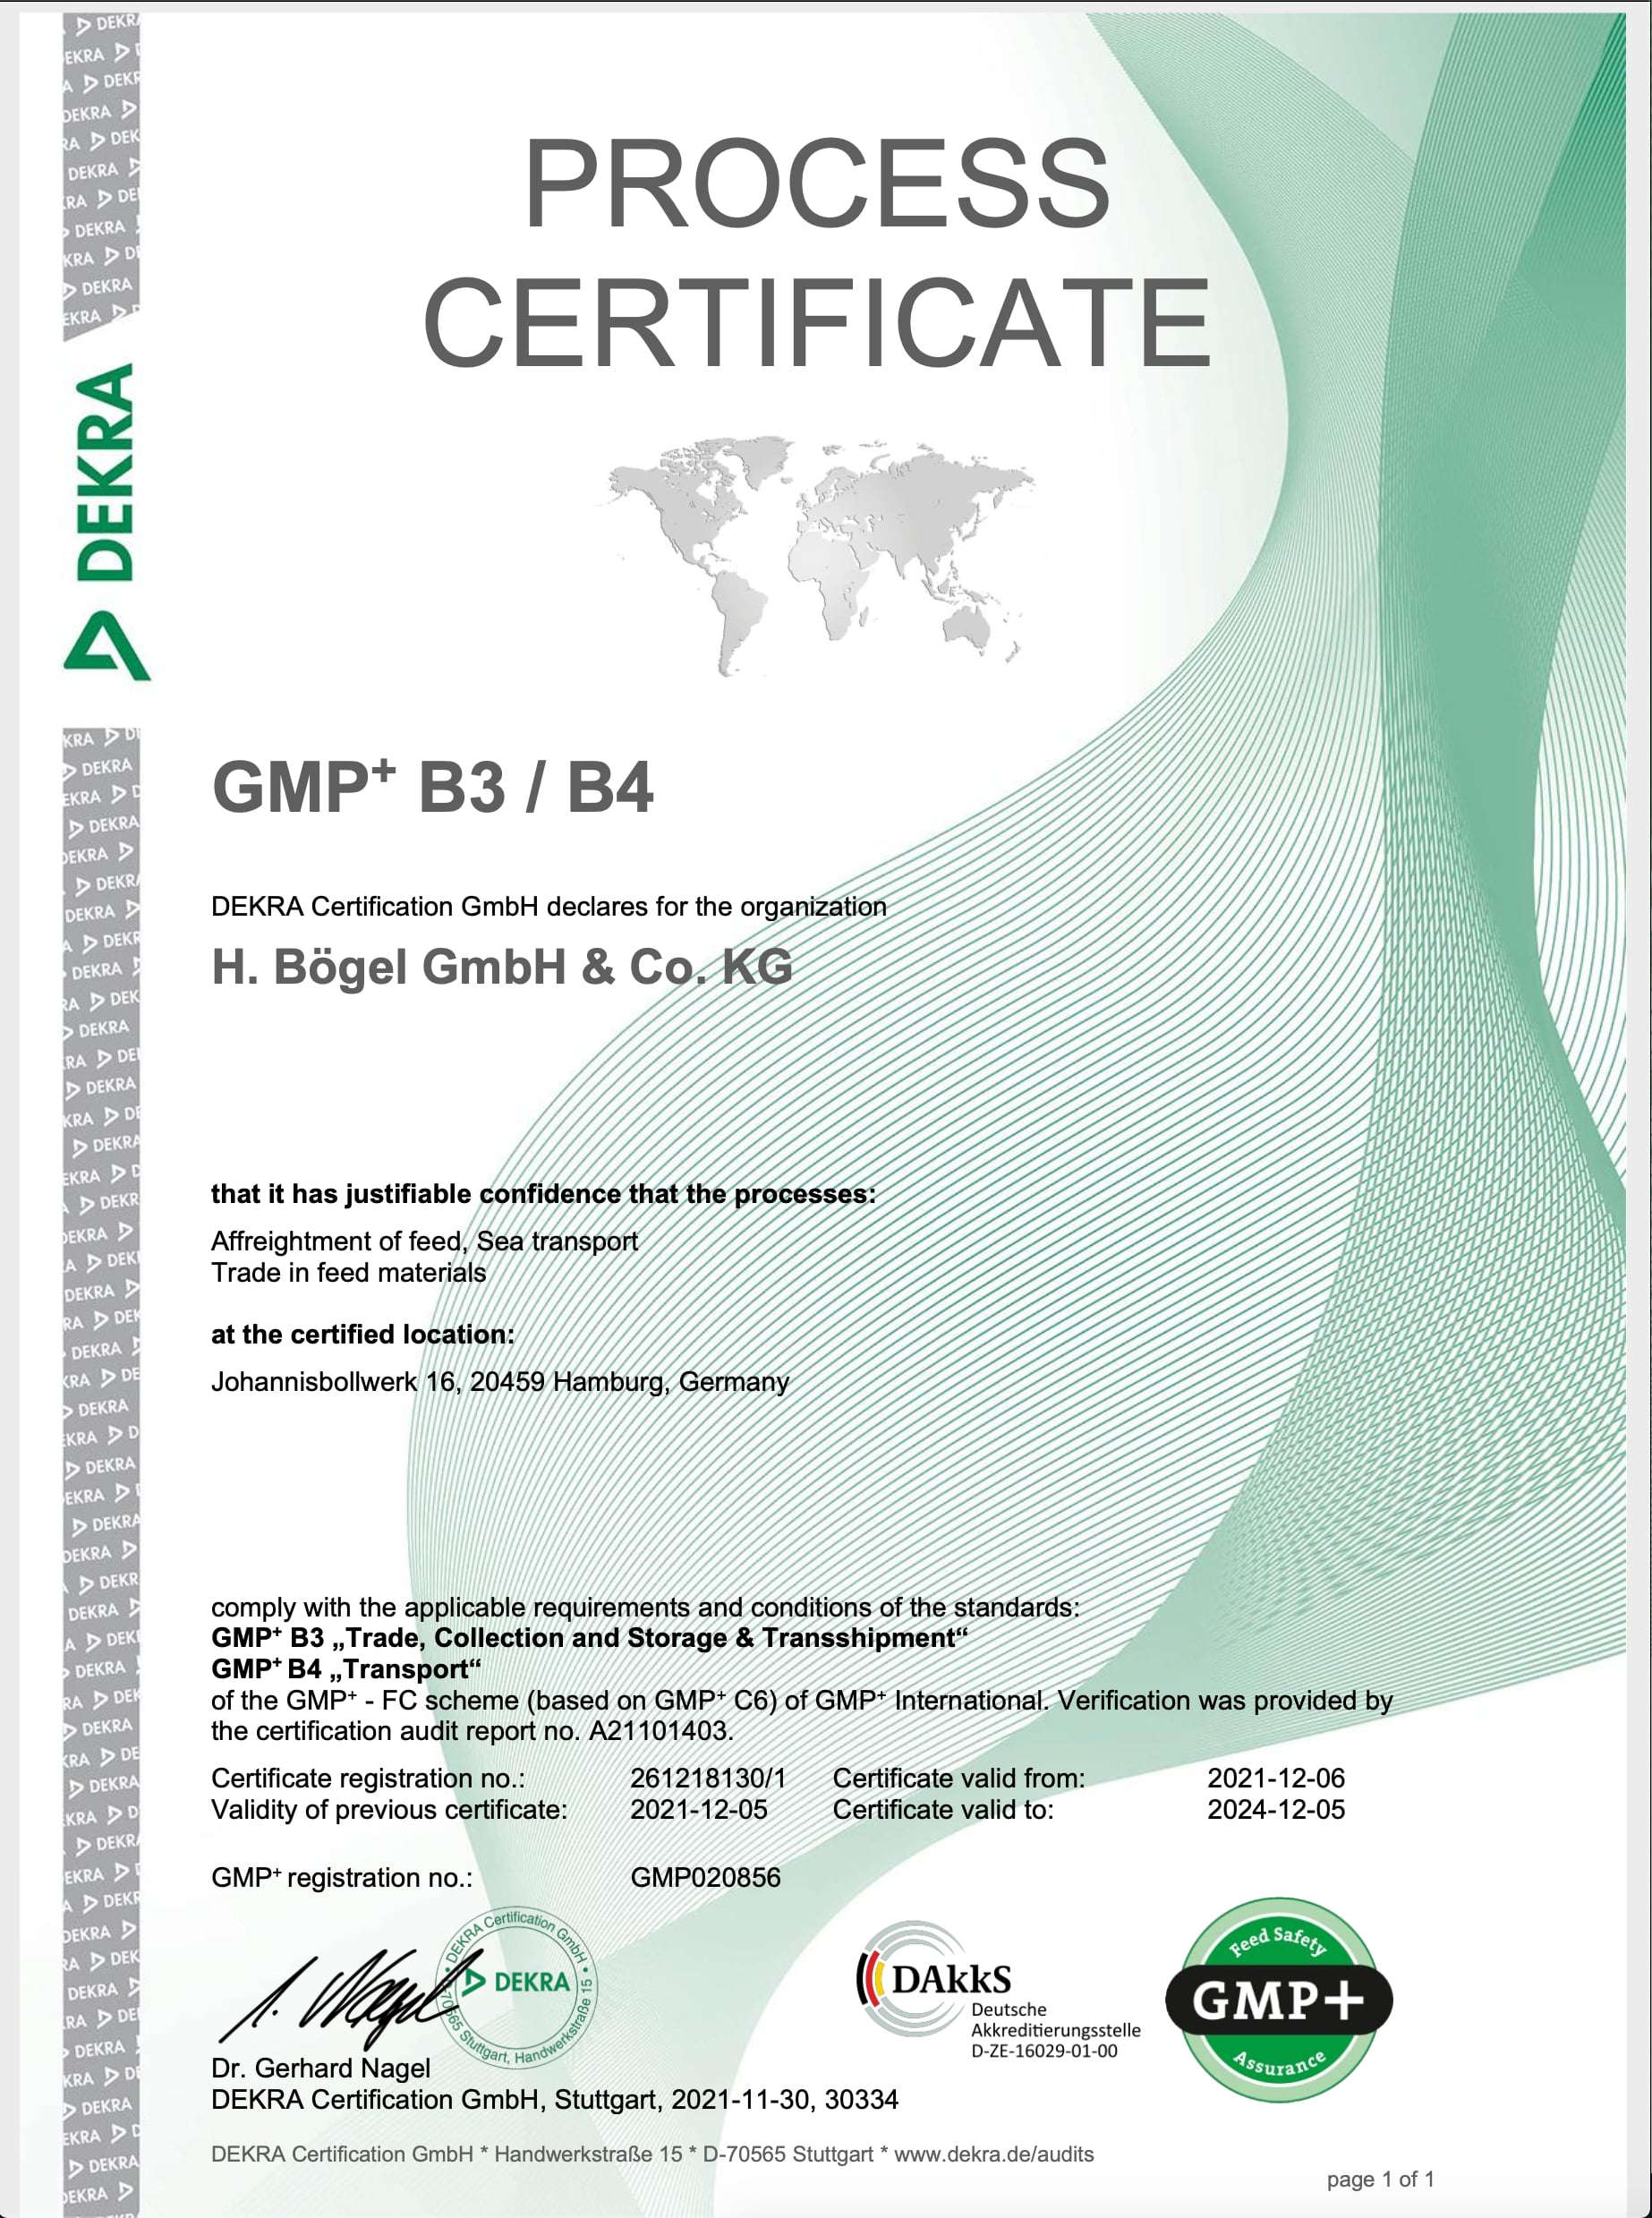 GMP+ 3 B3 Certificate